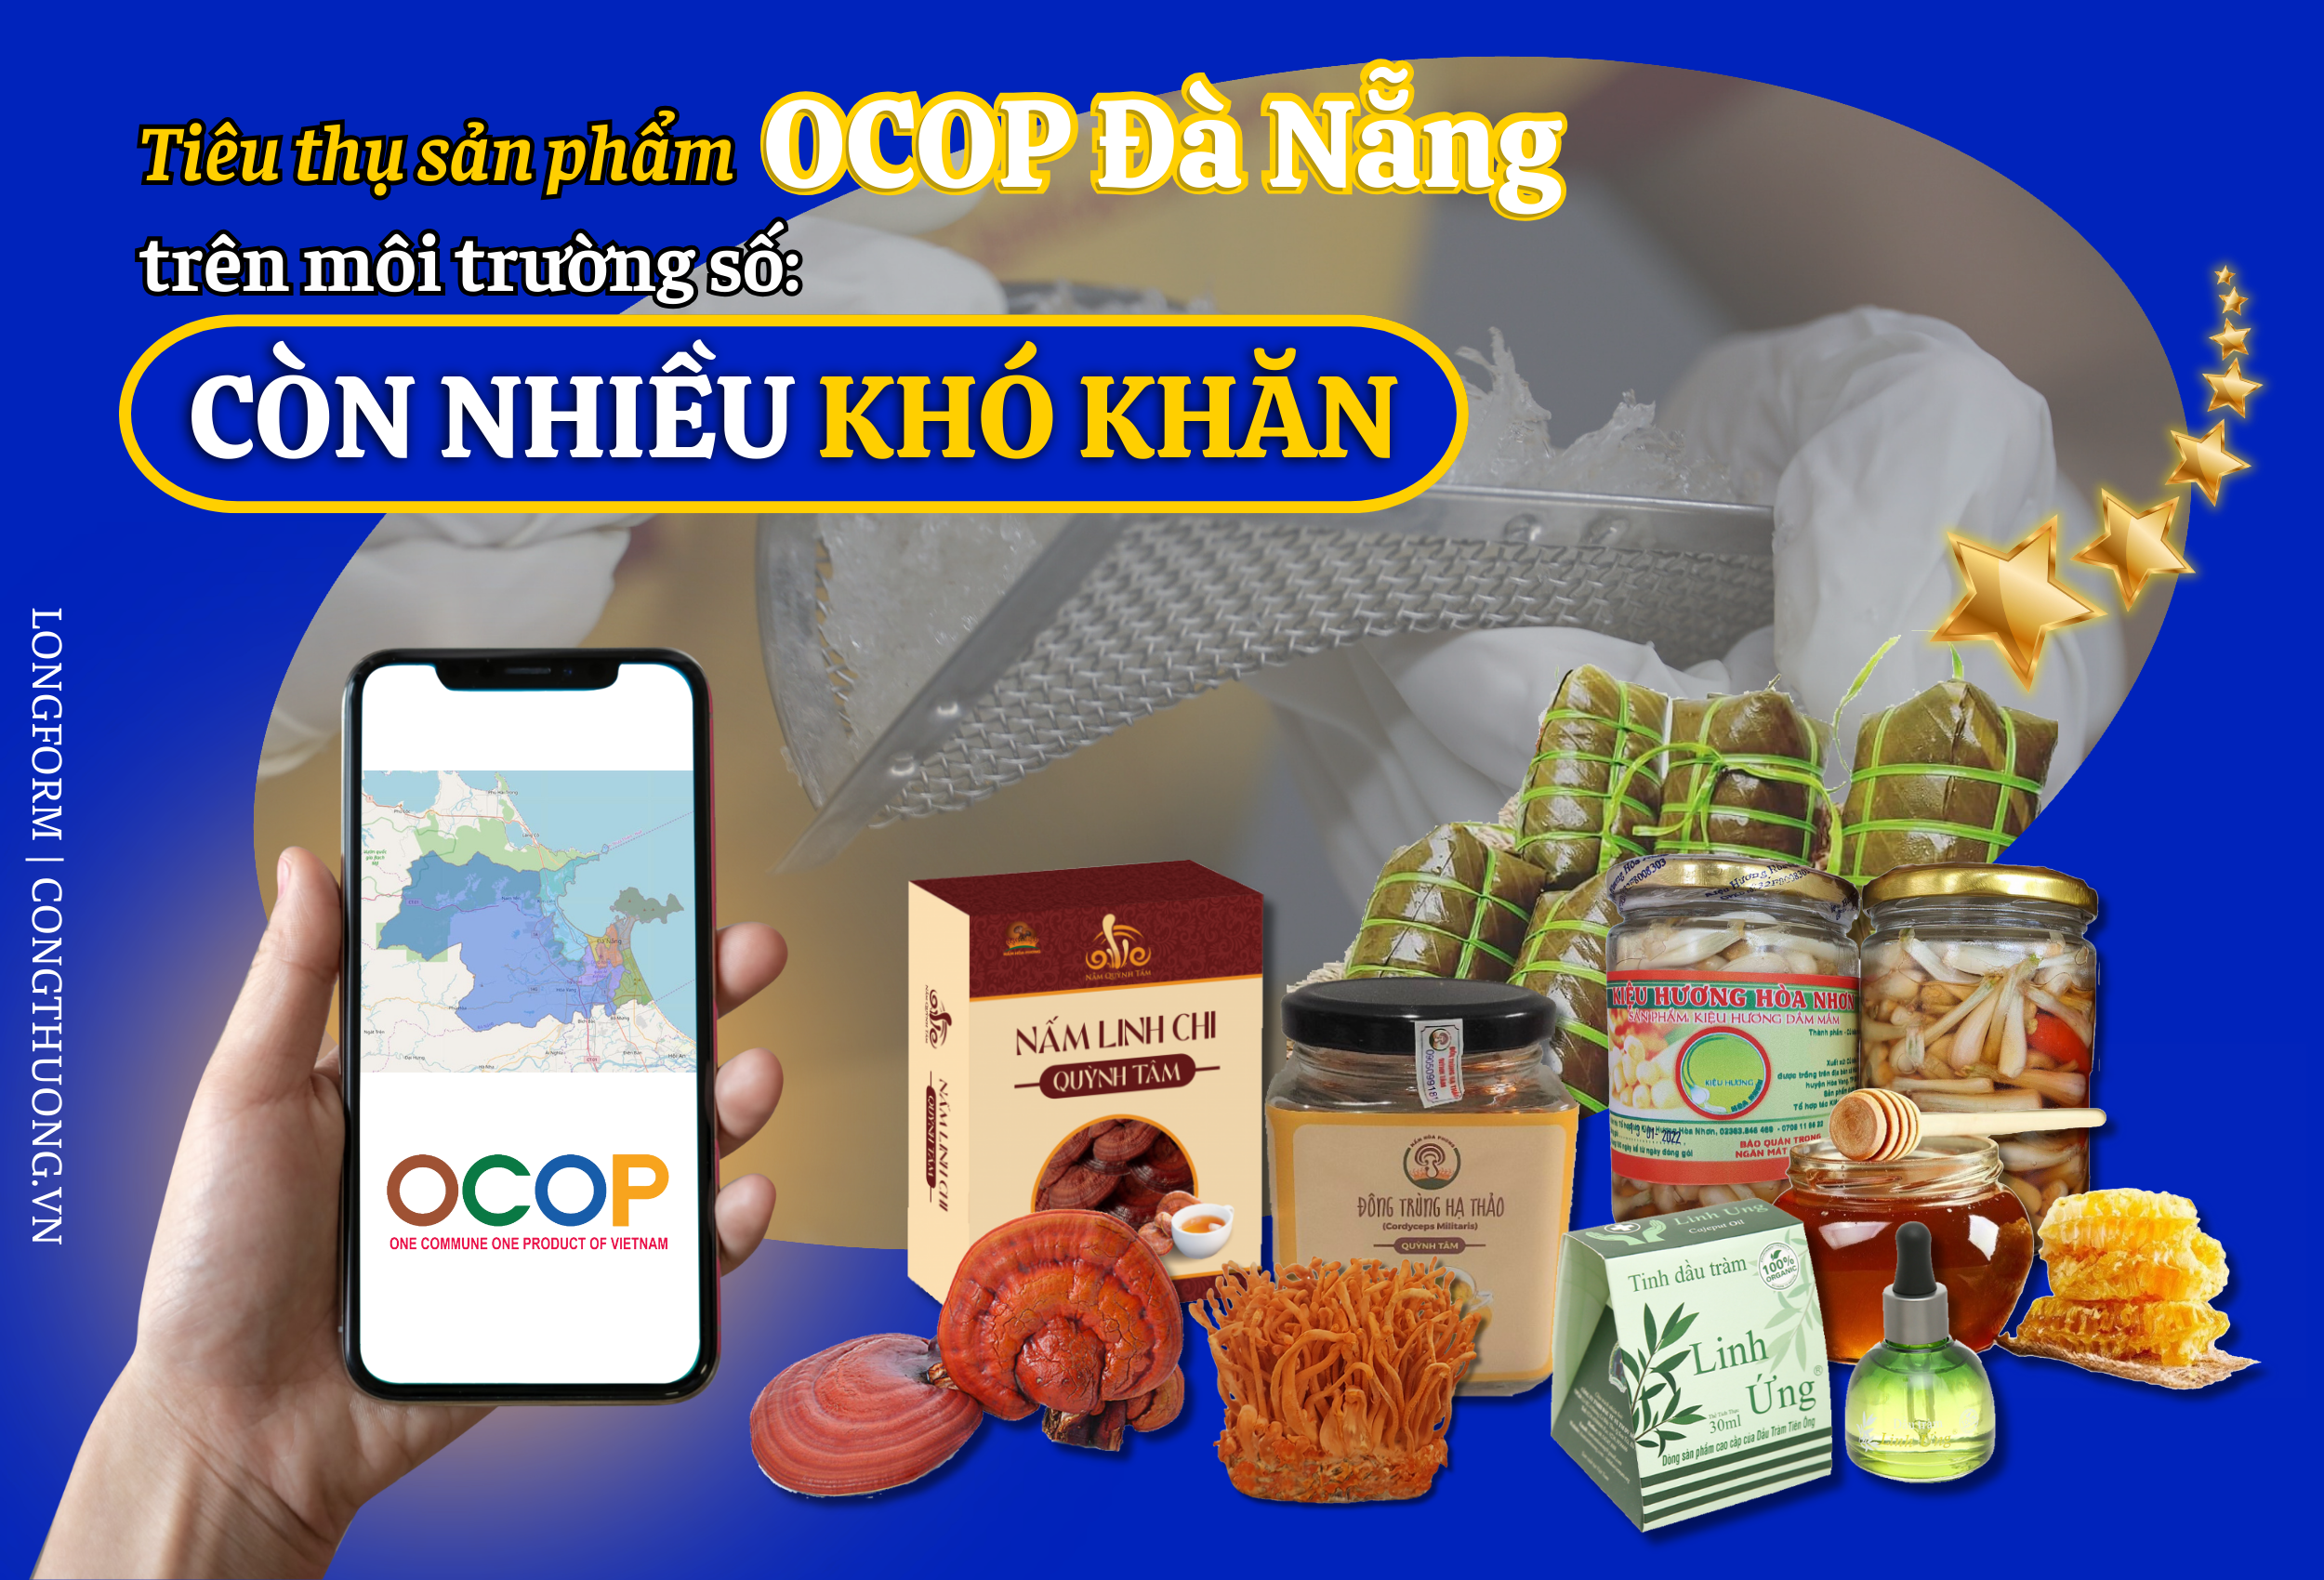 Tiêu thụ sản phẩm OCOP Đà Nẵng trên môi trường số: Còn nhiều khó khăn